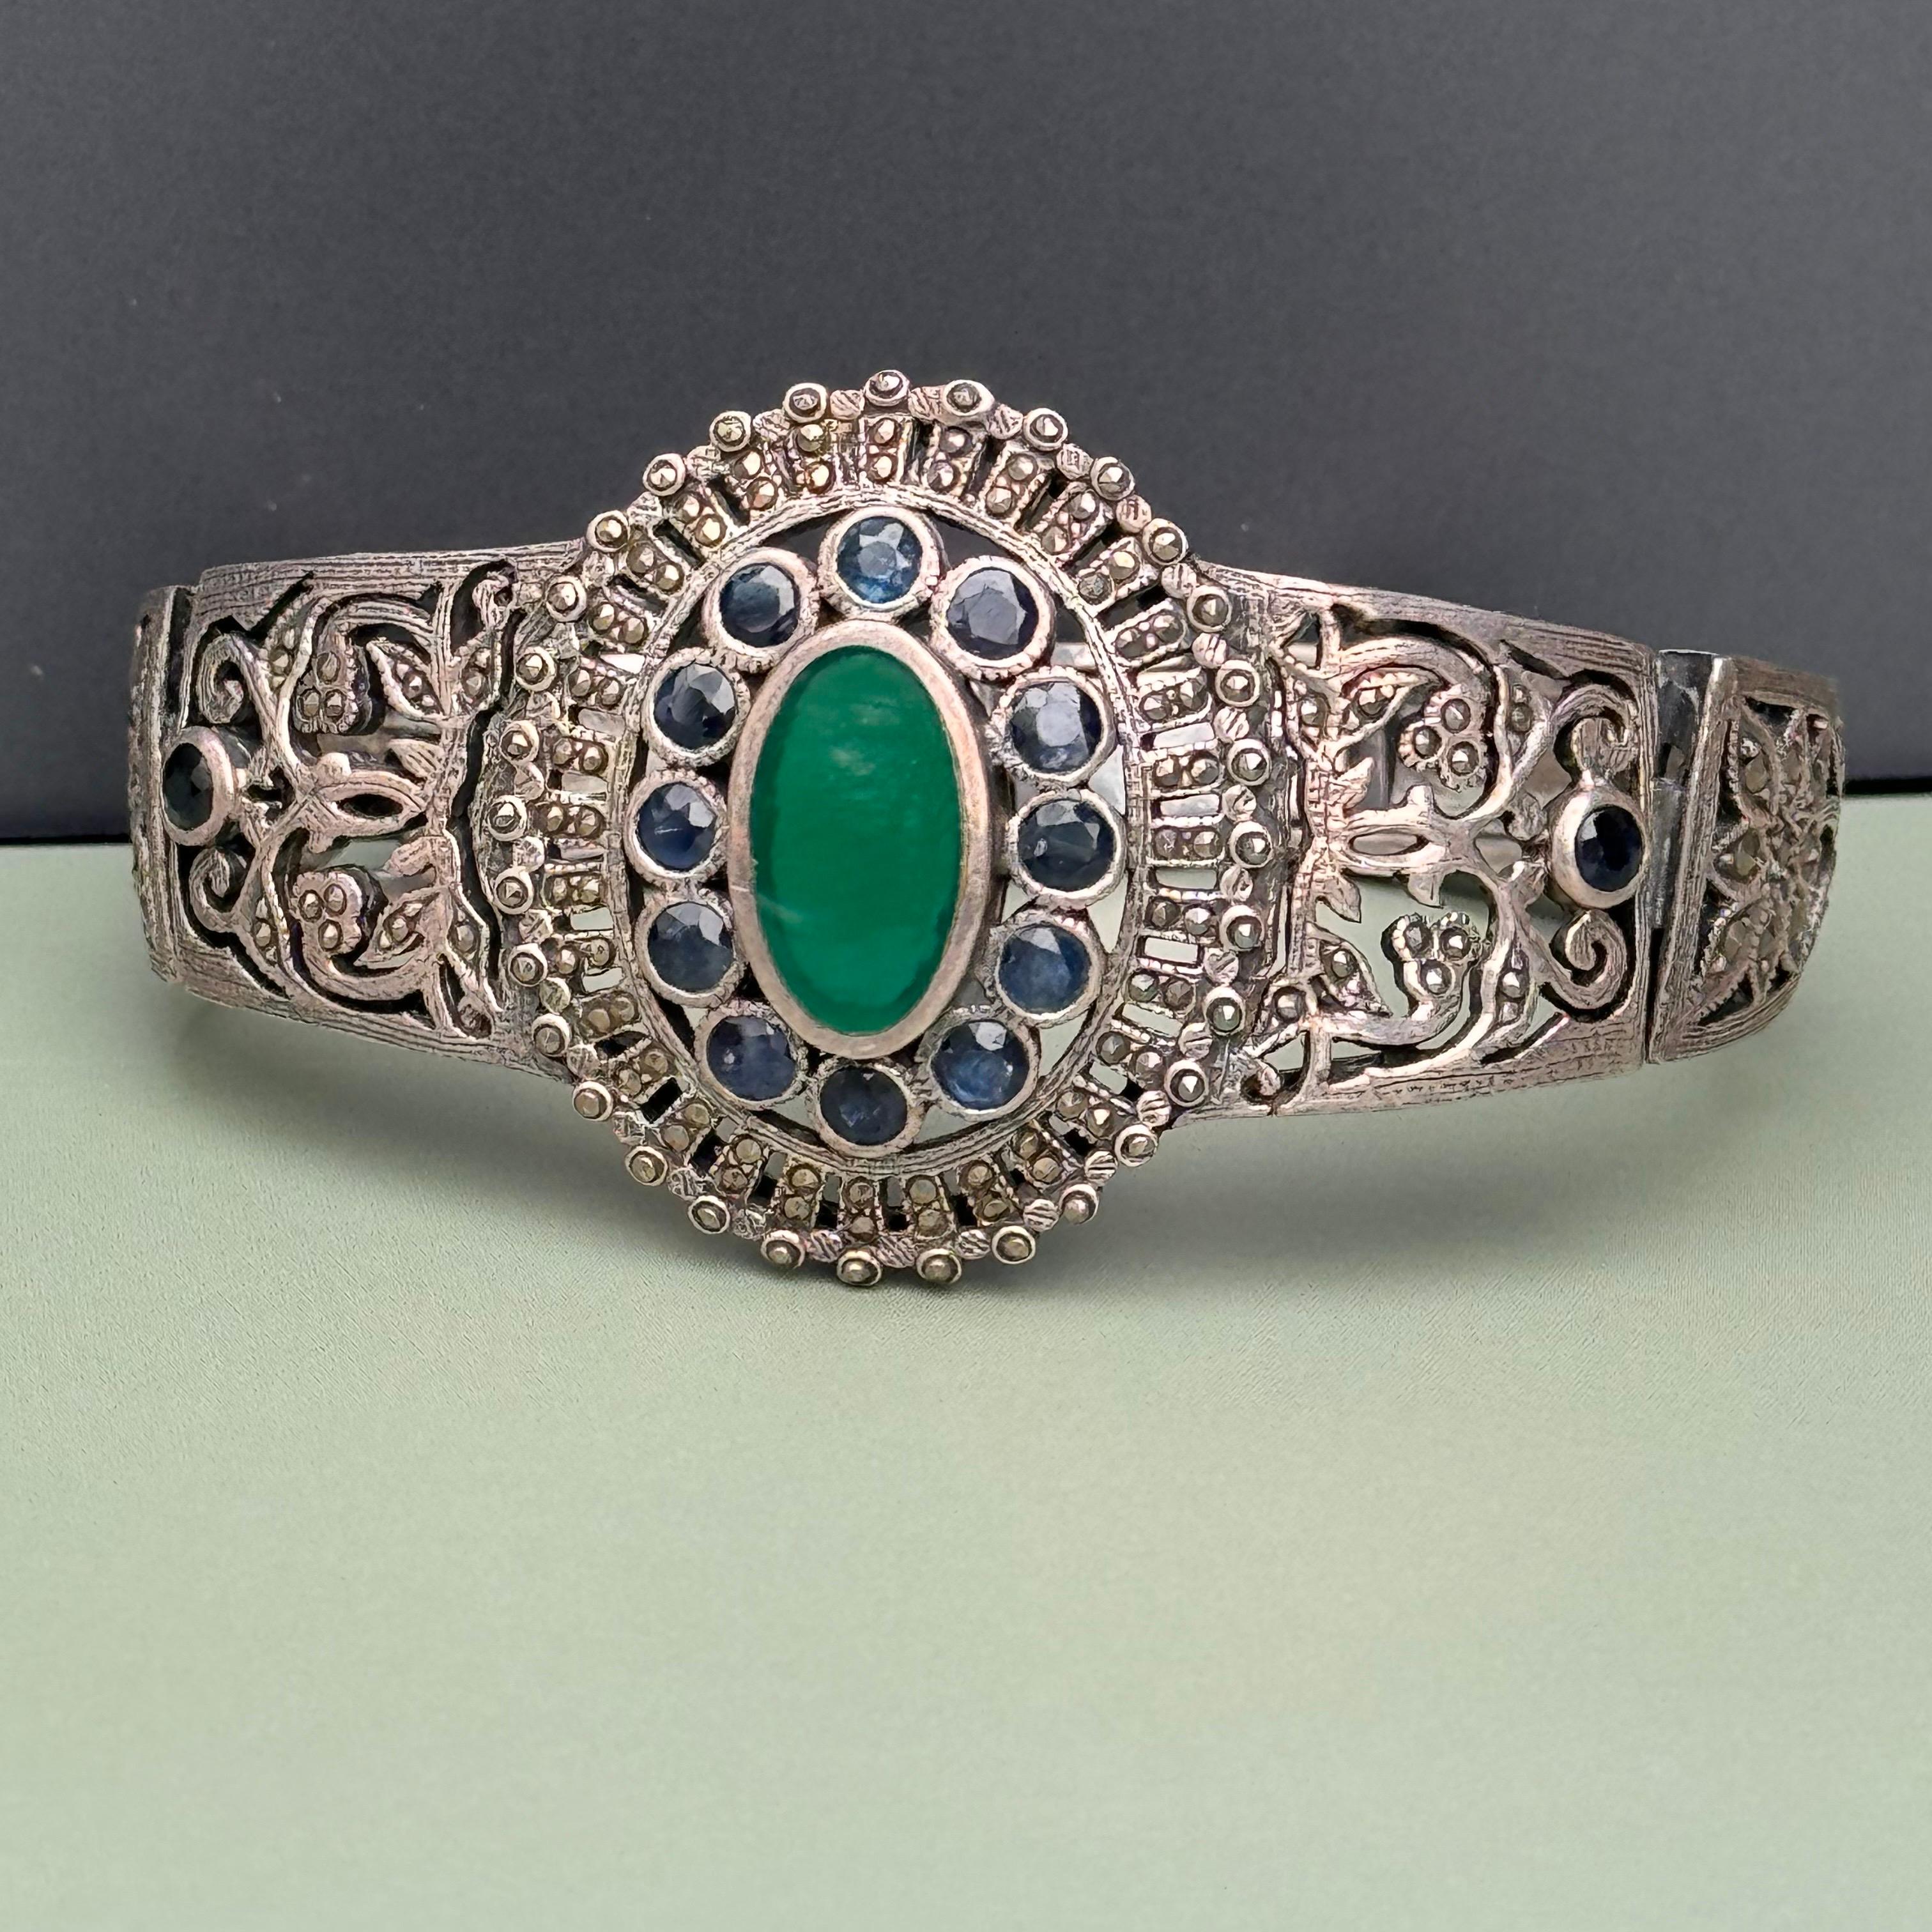 Vintage By  Art Deco Sterling Silber Saphir und Markasit Armband  mit einem großen grünen Onyx-Stein in der Mitte, der eine reiche Farbe und Eleganz ausstrahlt. Um den Onyx herum sind 14 facettierte Cabochons aus echtem Saphir angeordnet, von denen